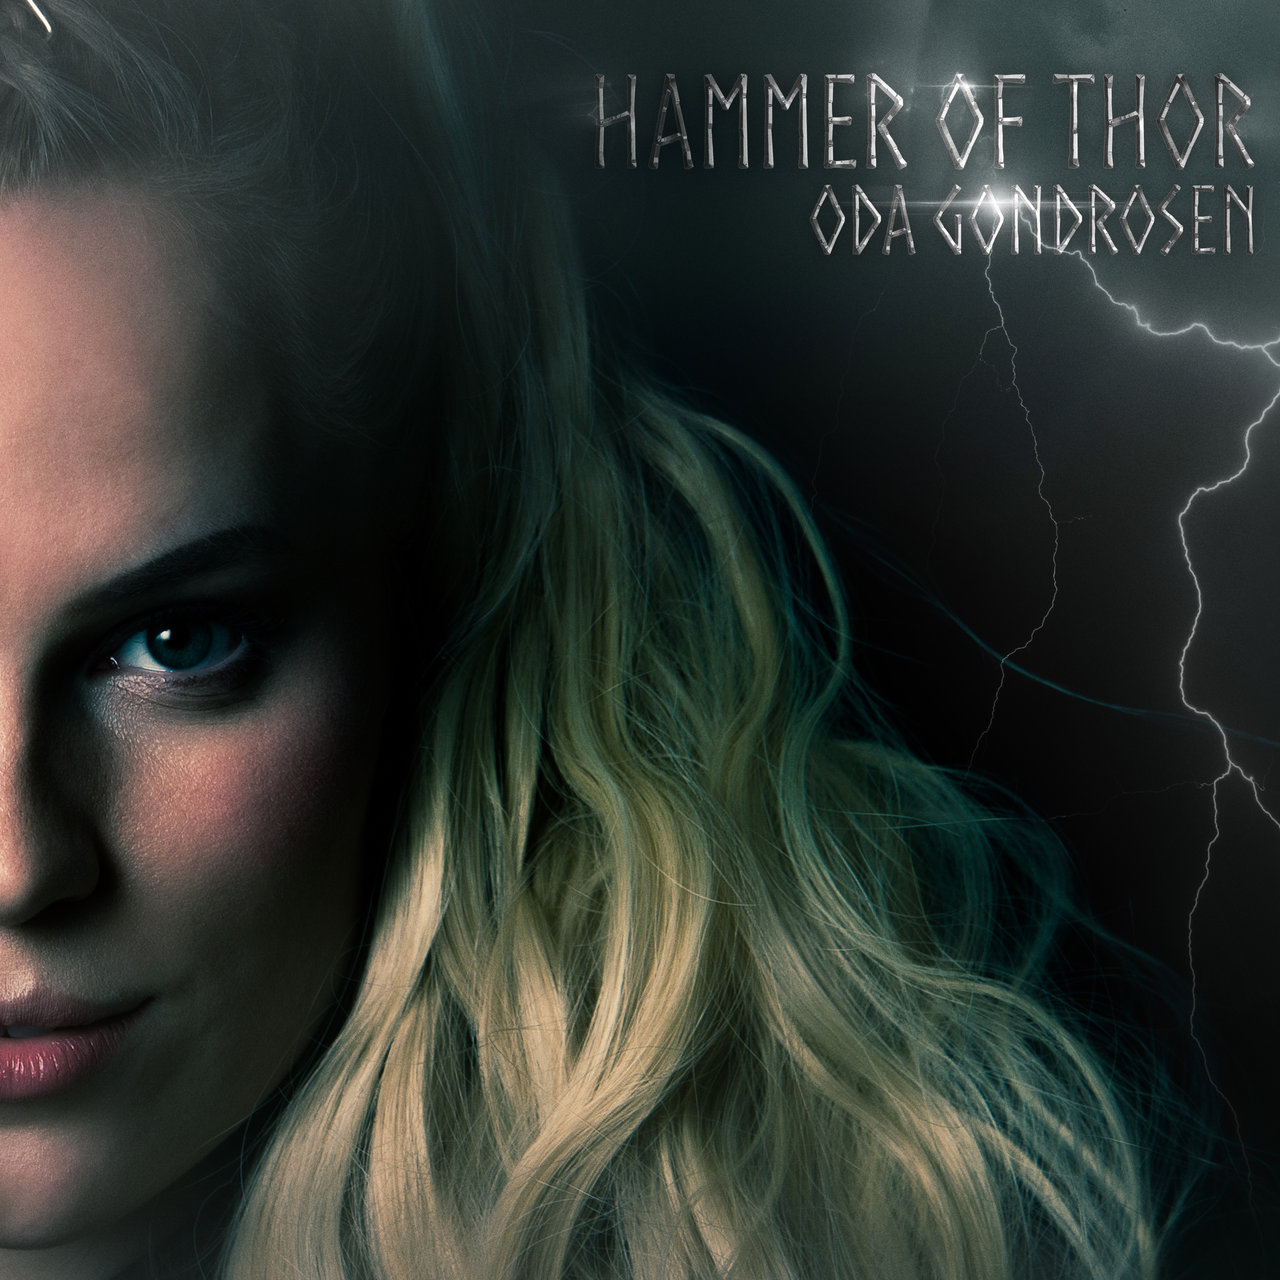 Oda Gondrosen — Hammer of Thor cover artwork